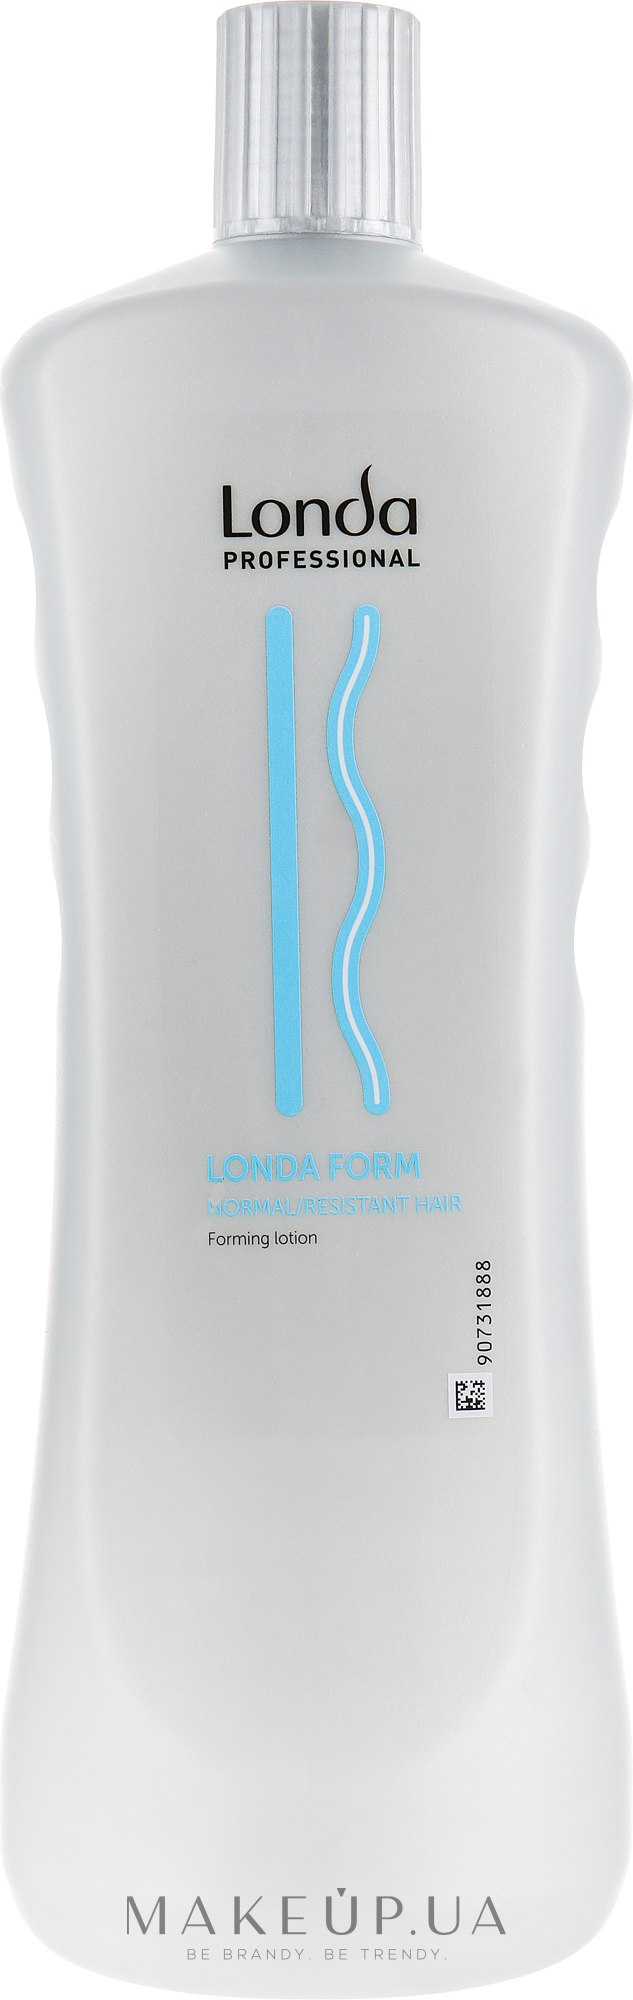 Лосьон для долгосрочной укладки, для нормальных и жестких волос - Londa Professional Londa Form Normal/Resistant Forming Lotion — фото 1000ml